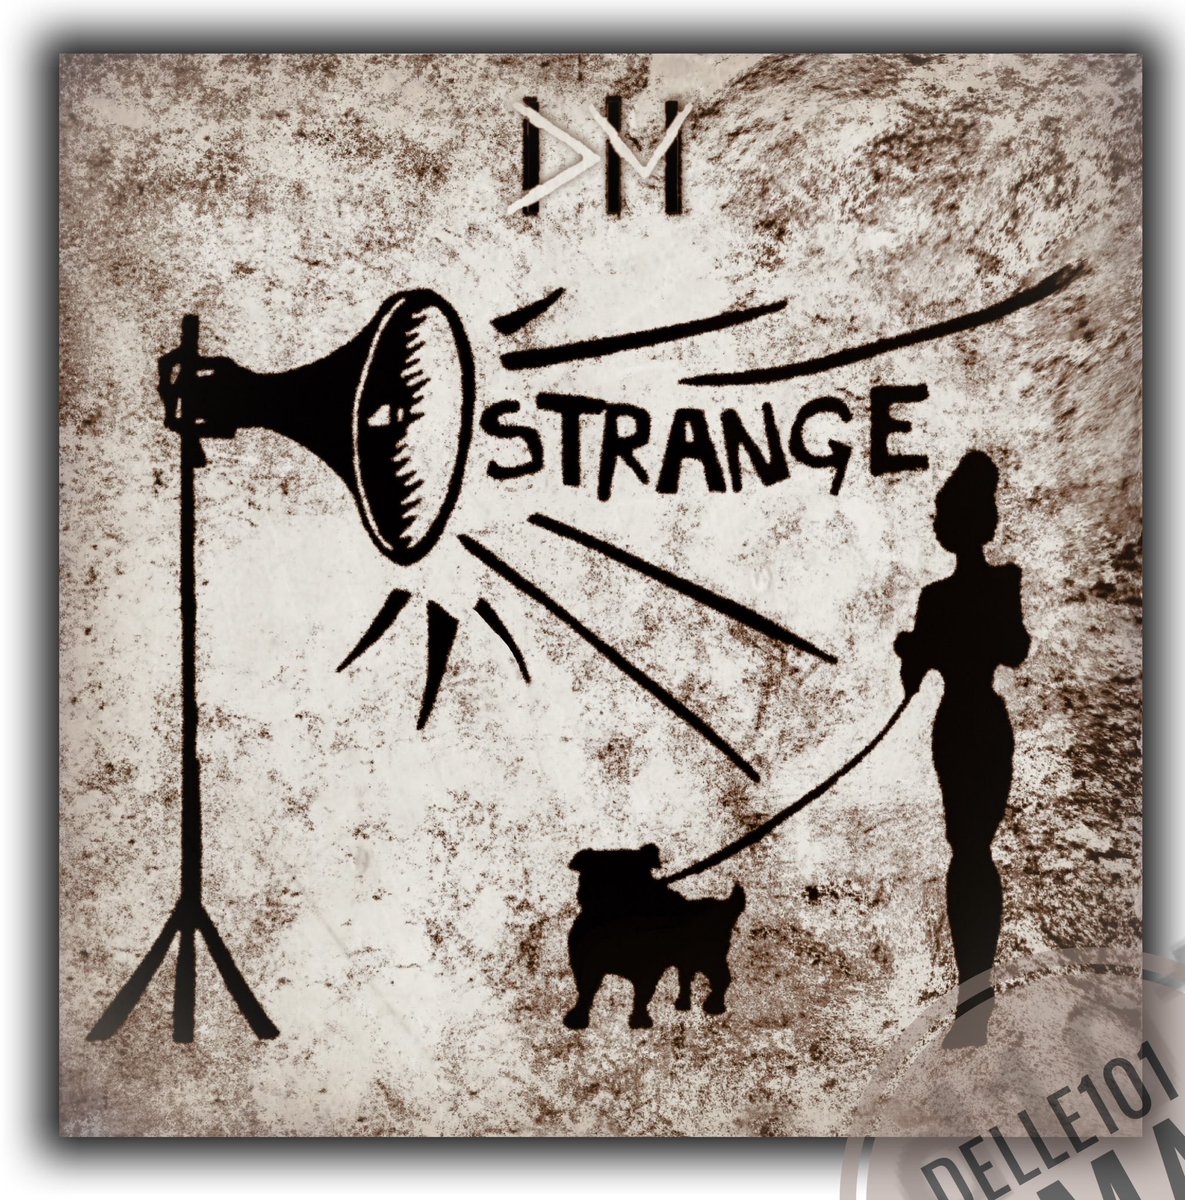 #depechedecember today: Strangelove 🖤 

#DepecheMode #musicforthemasses #strangelove